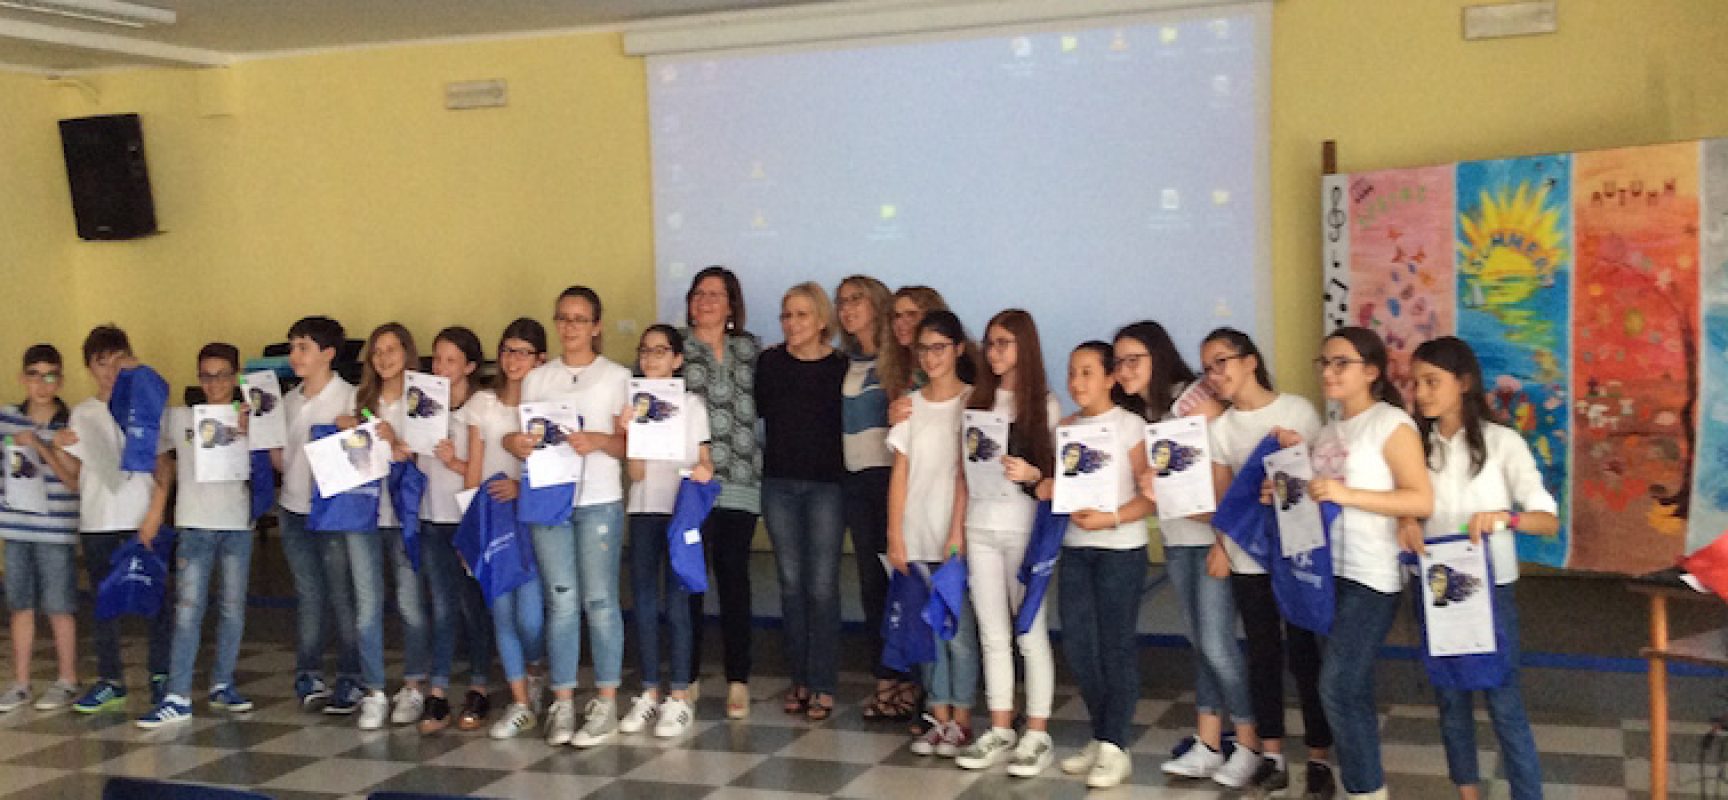 La scuola Monterisi chiude l’anno scolastico in bellezza con ennesimo riconoscimento europeo